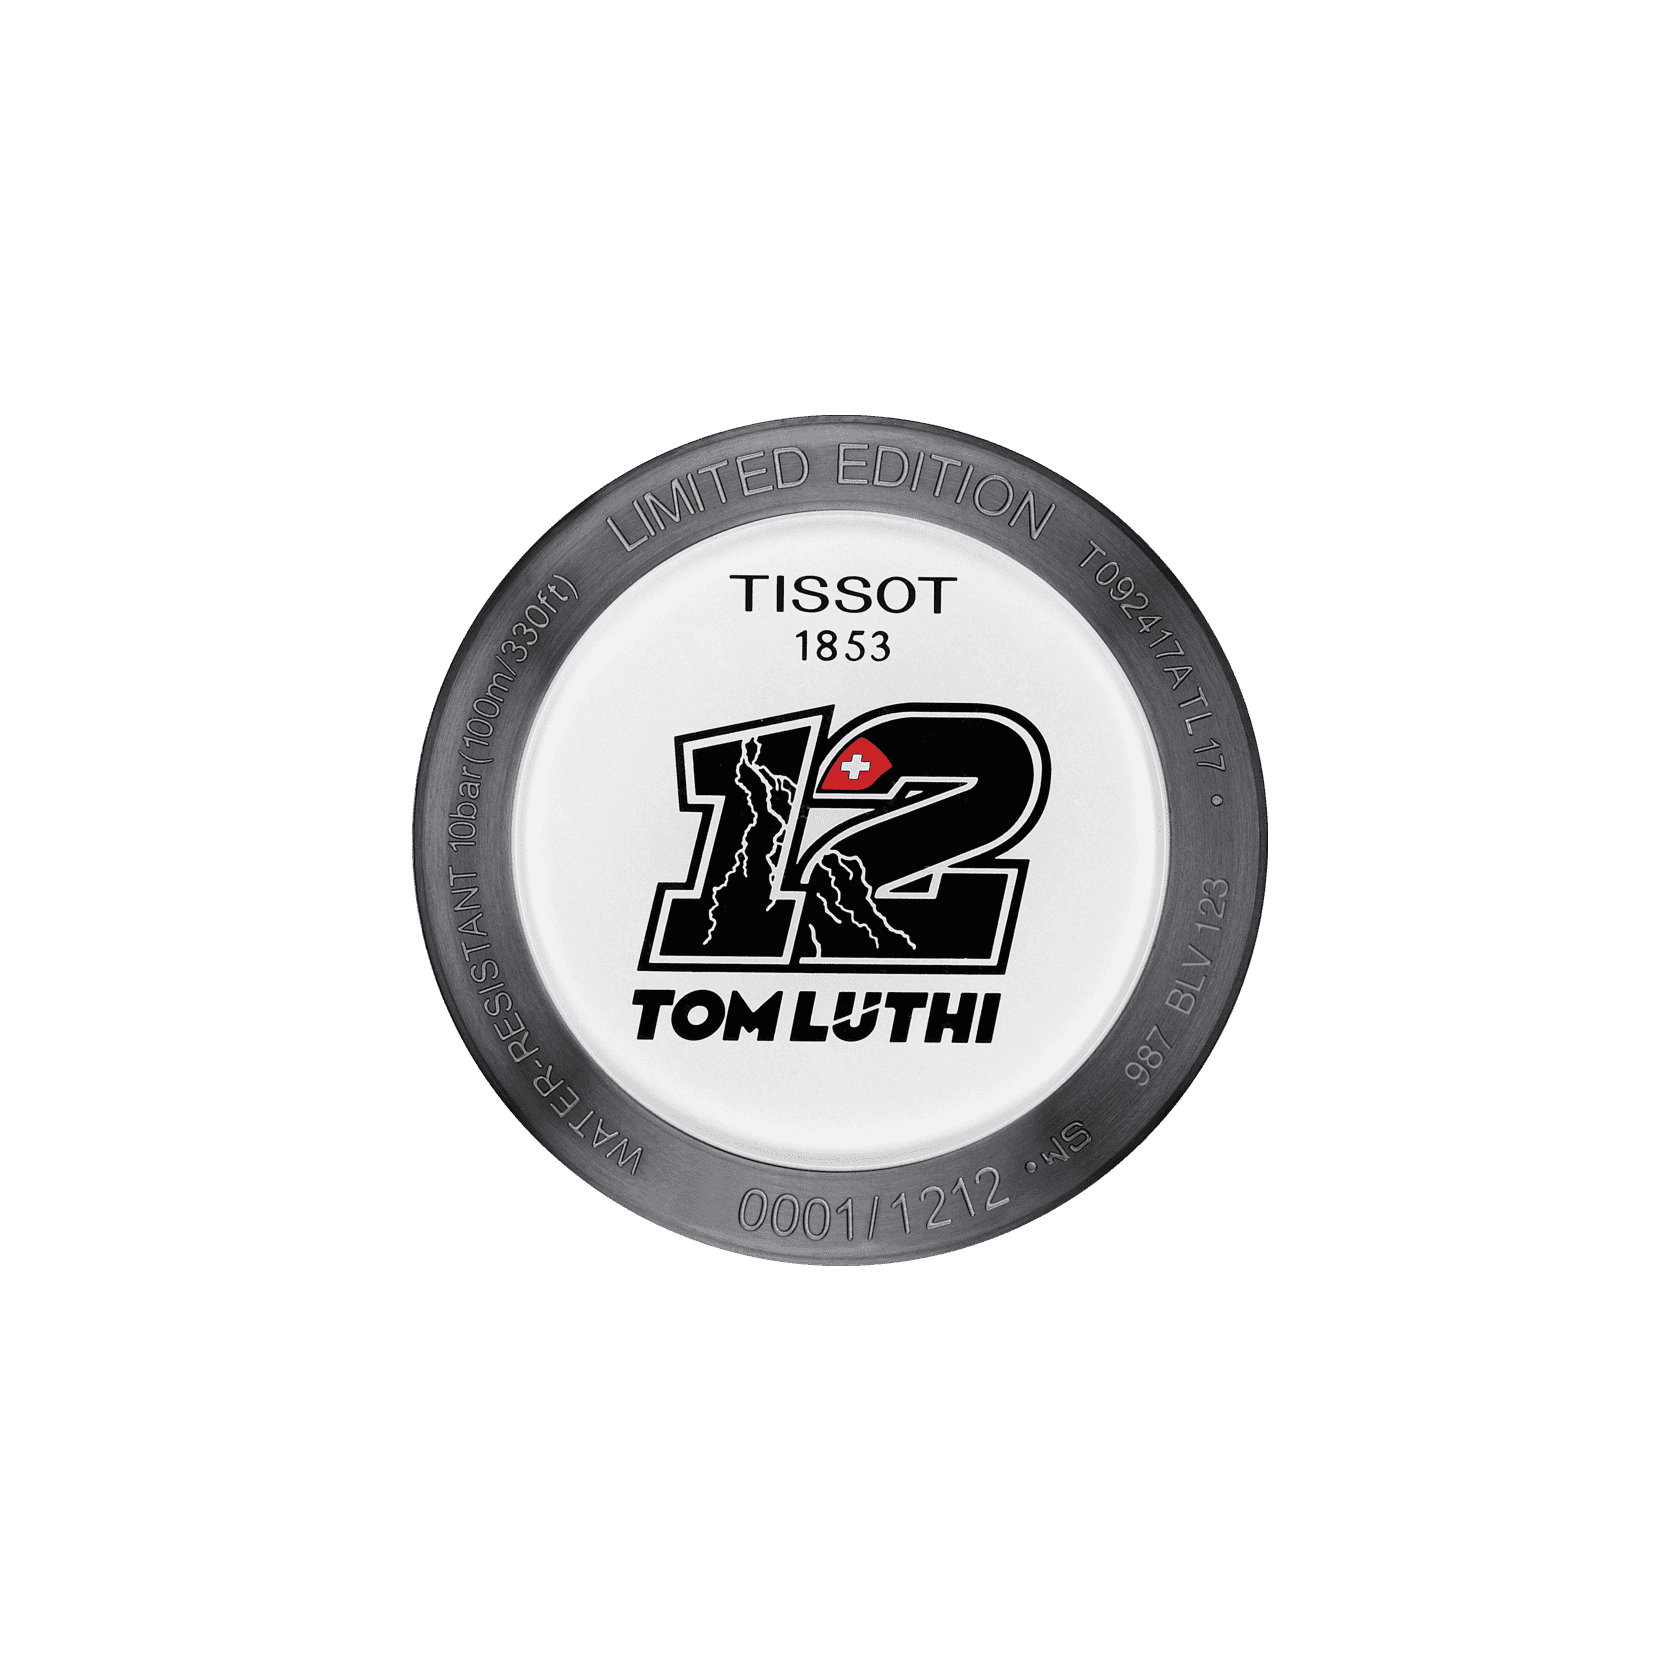 Tissot T-Race Thomas Luthi 2017